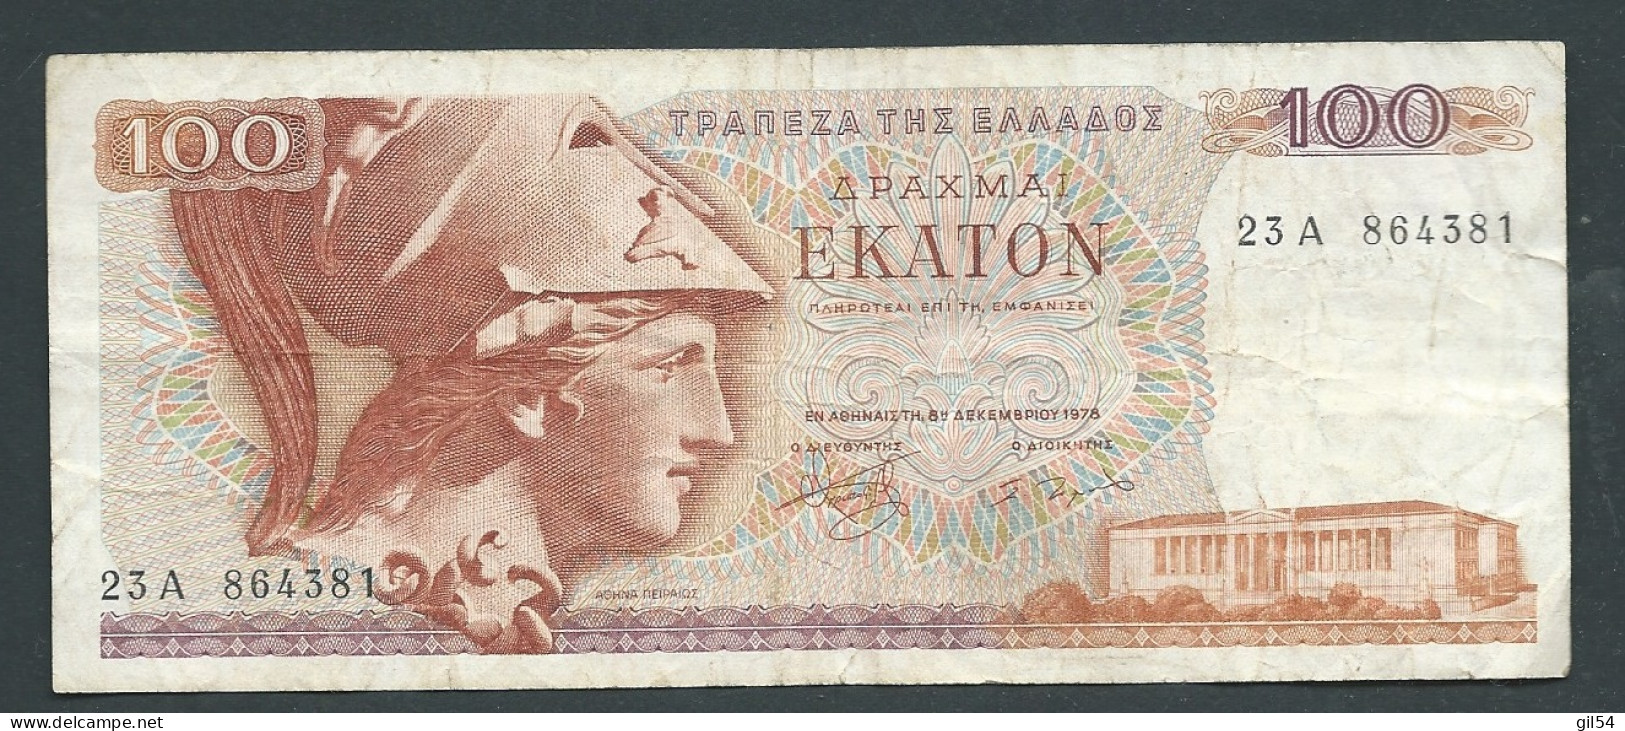 Grèce - Billet De 100 Drachmes 1978   -   23A864381-  Laura 10205 - Grèce